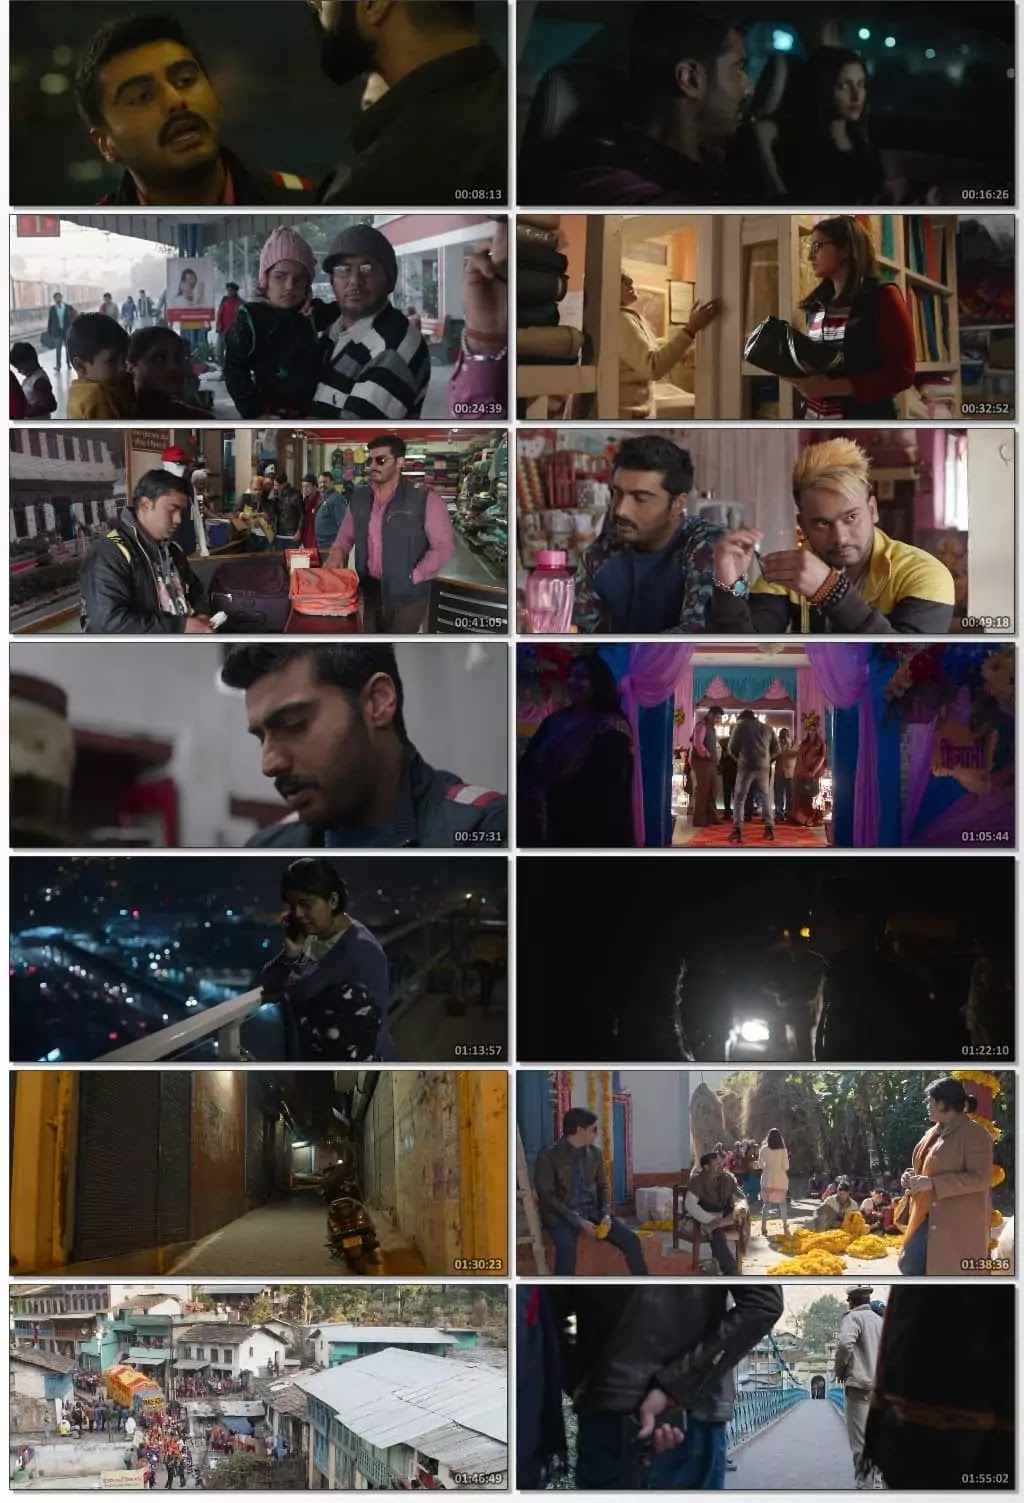 Sandeep Aur Pinky Faraar 2021 Hindi movie 480p 720p Download